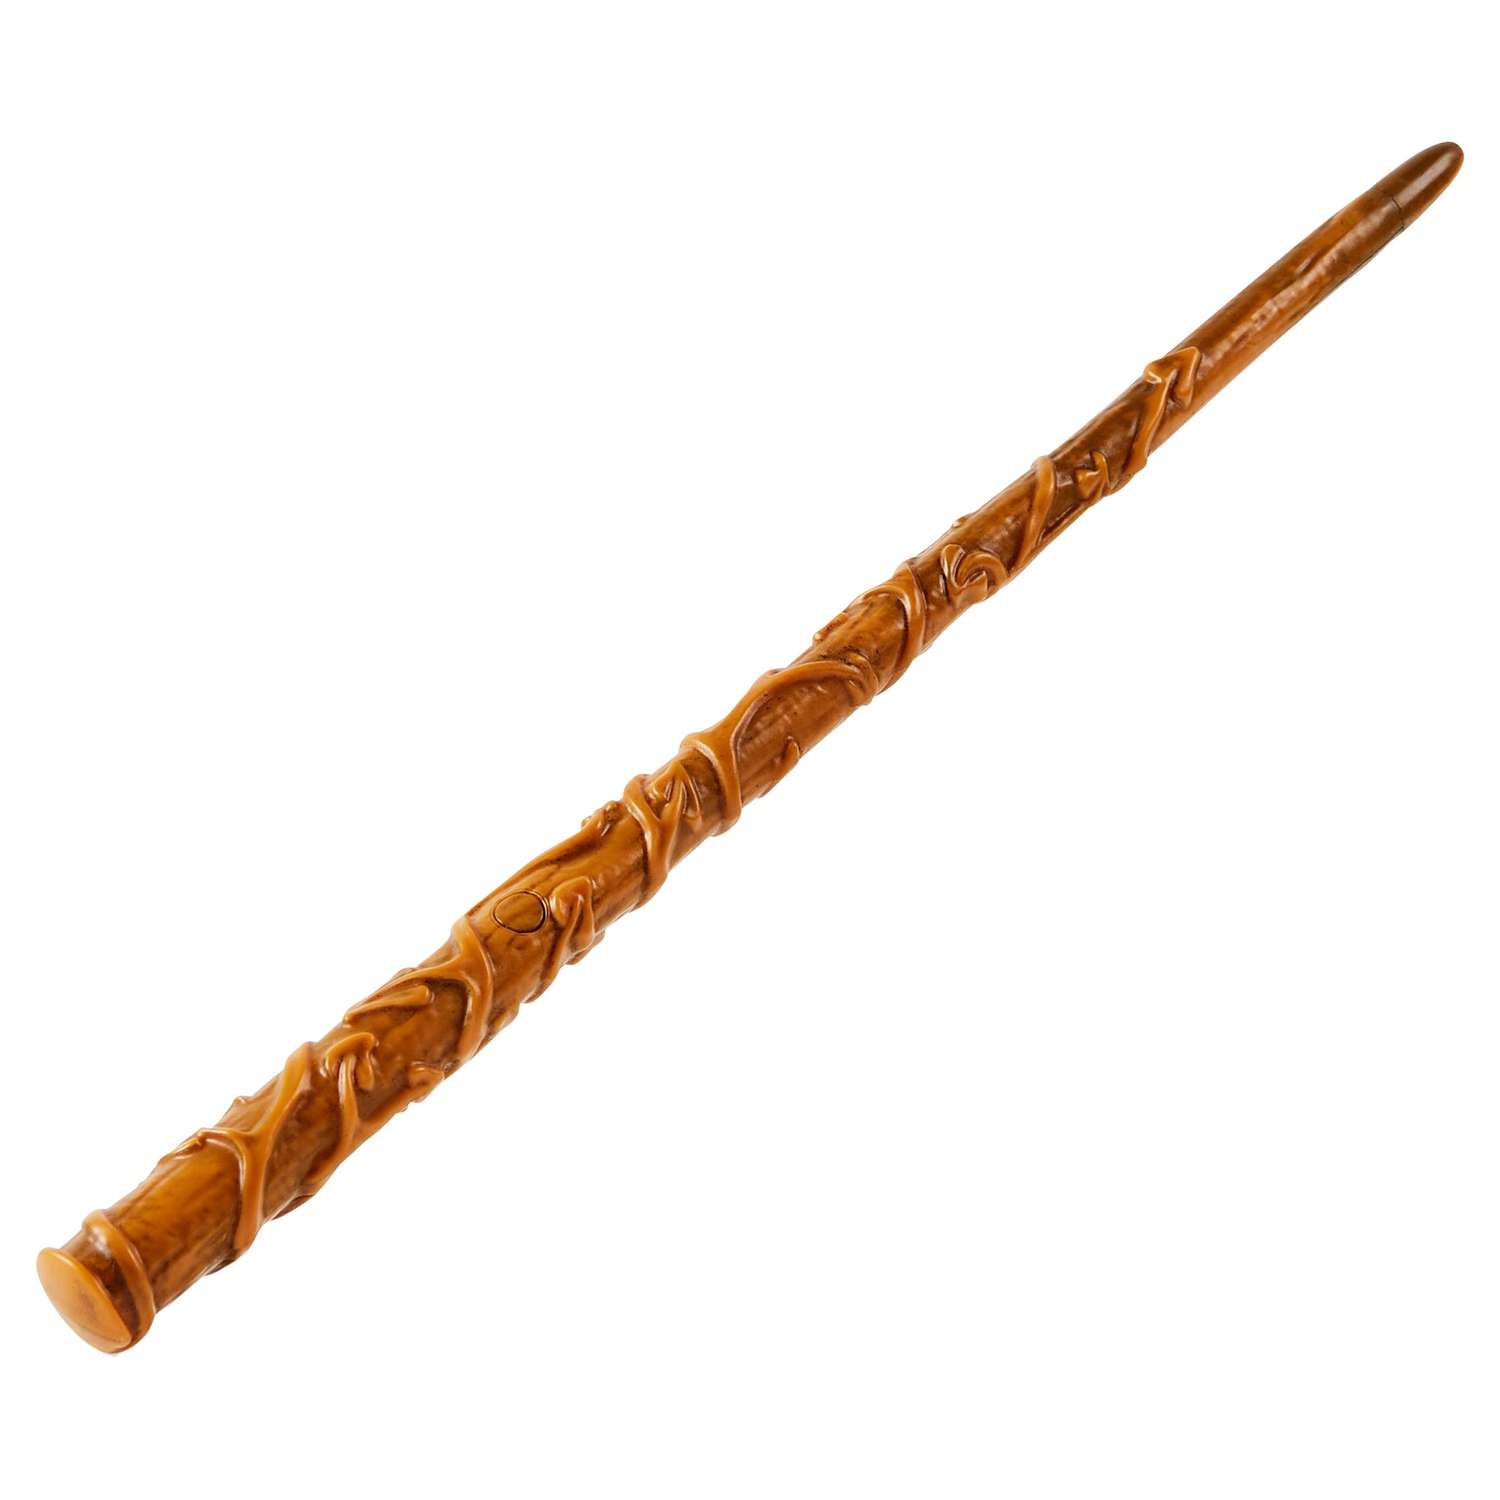 Игрушка WWO Harry Potter Волшебная палочка Гермионы Экспекто патронум 6064165 - фото 1